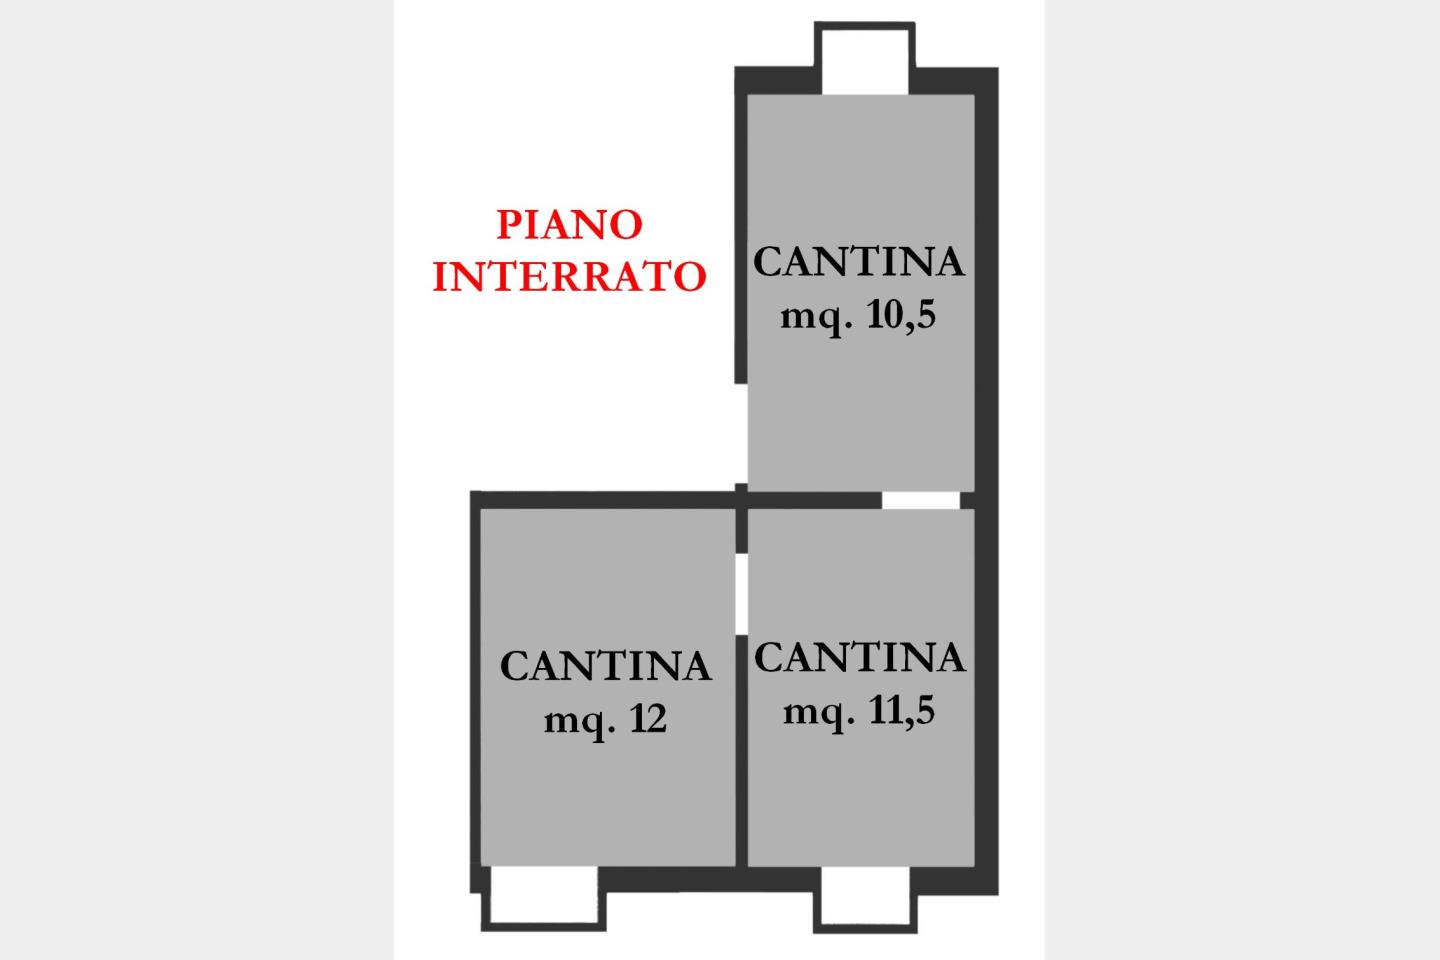 Piano Interrato - Cantina